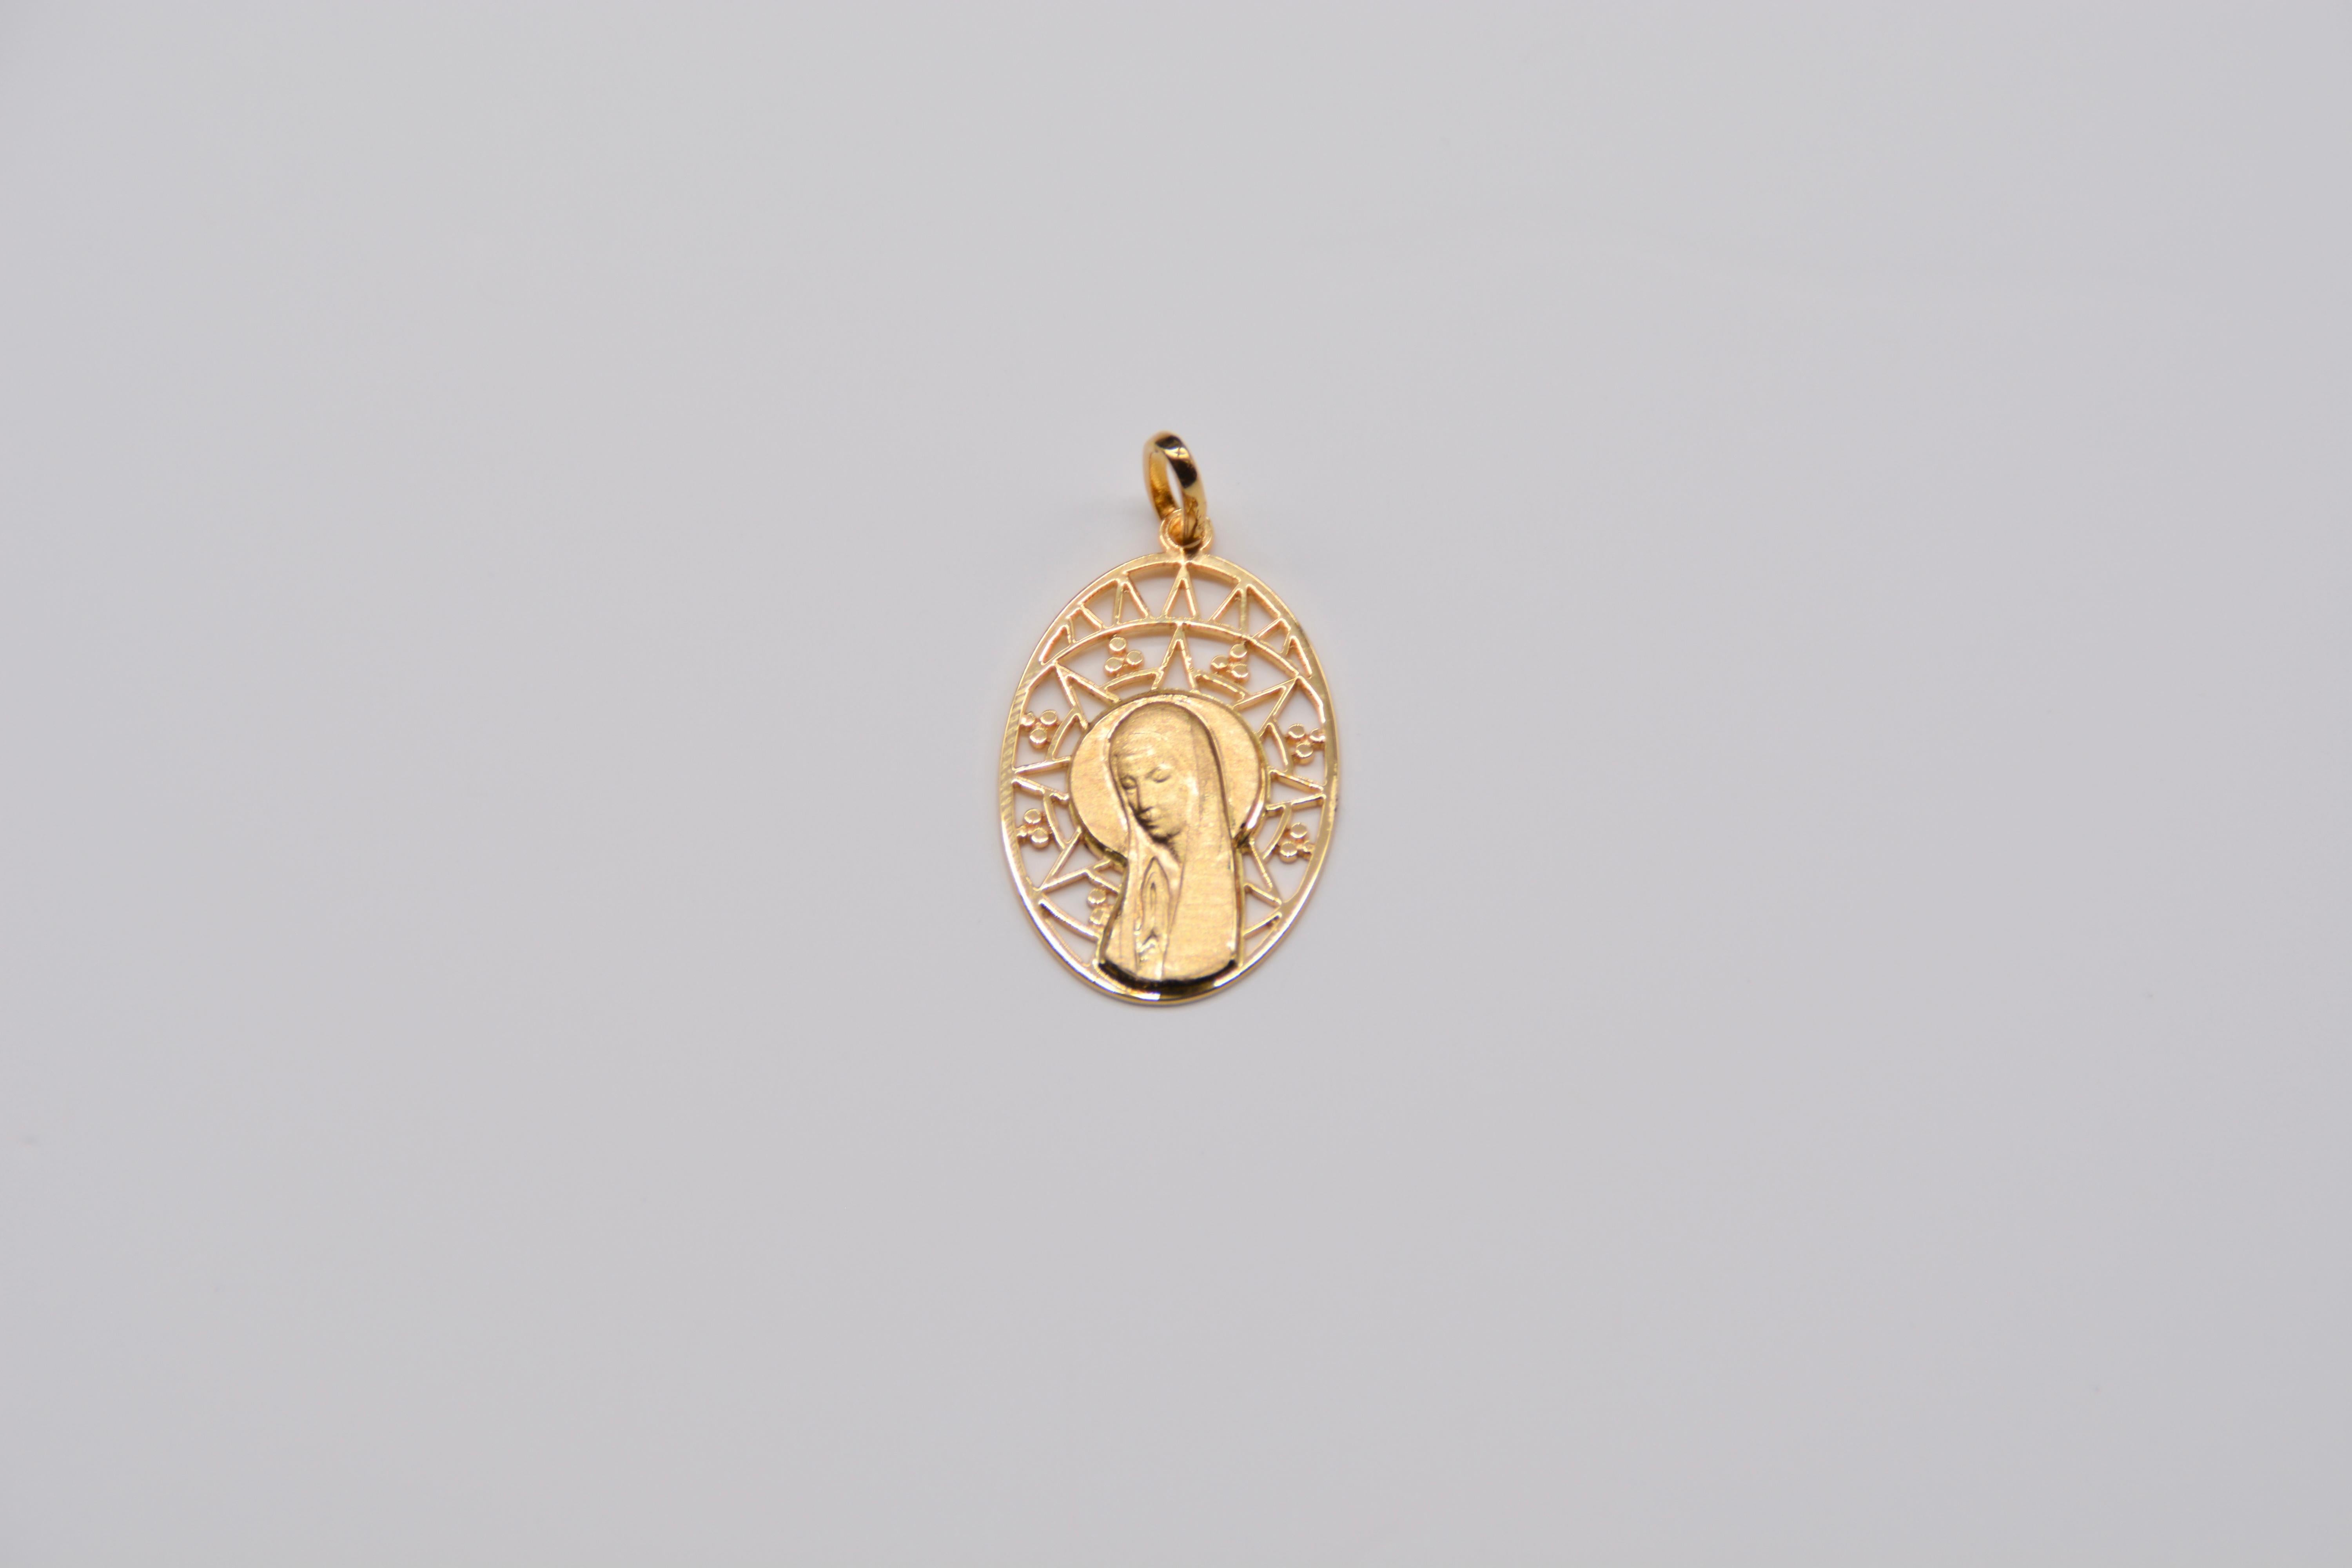 Jungfrau durchbrochene Medaille Oval Gold Gelb

Diese wunderschöne Medaille der Jungfrau Maria aus 18 Karat Gelbgold ist ein ikonisches religiöses Stück, das von Gläubigen und Sammlern religiöser Medaillen sehr geschätzt wird. Die Jungfrau ist fein